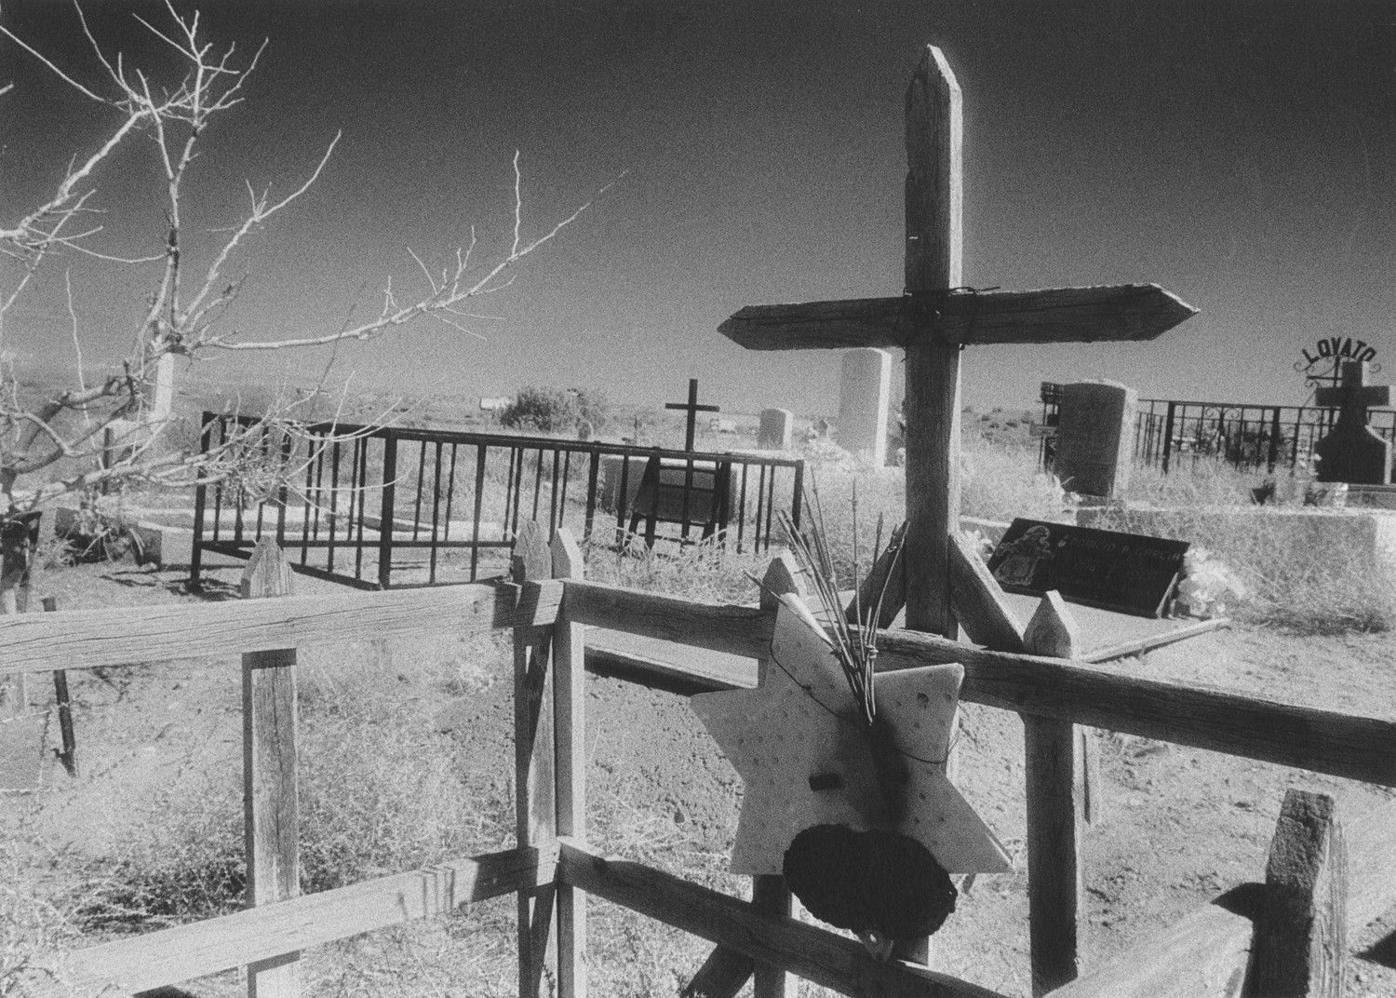 Crypto Jewish cemetery, Taos News, Taos, New Mexico